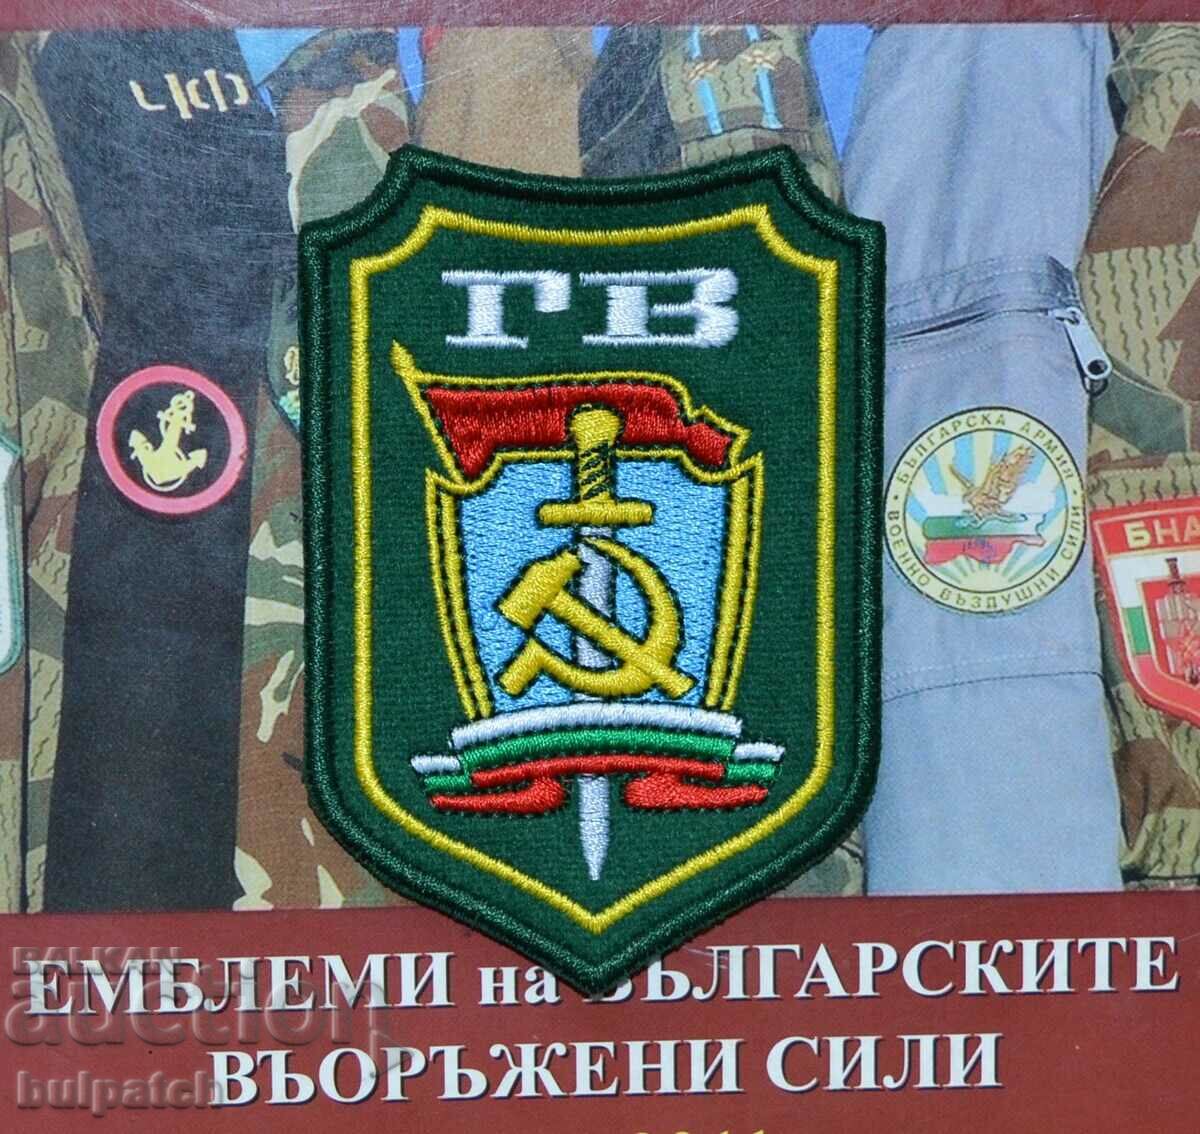 GV emblem of Border Troops